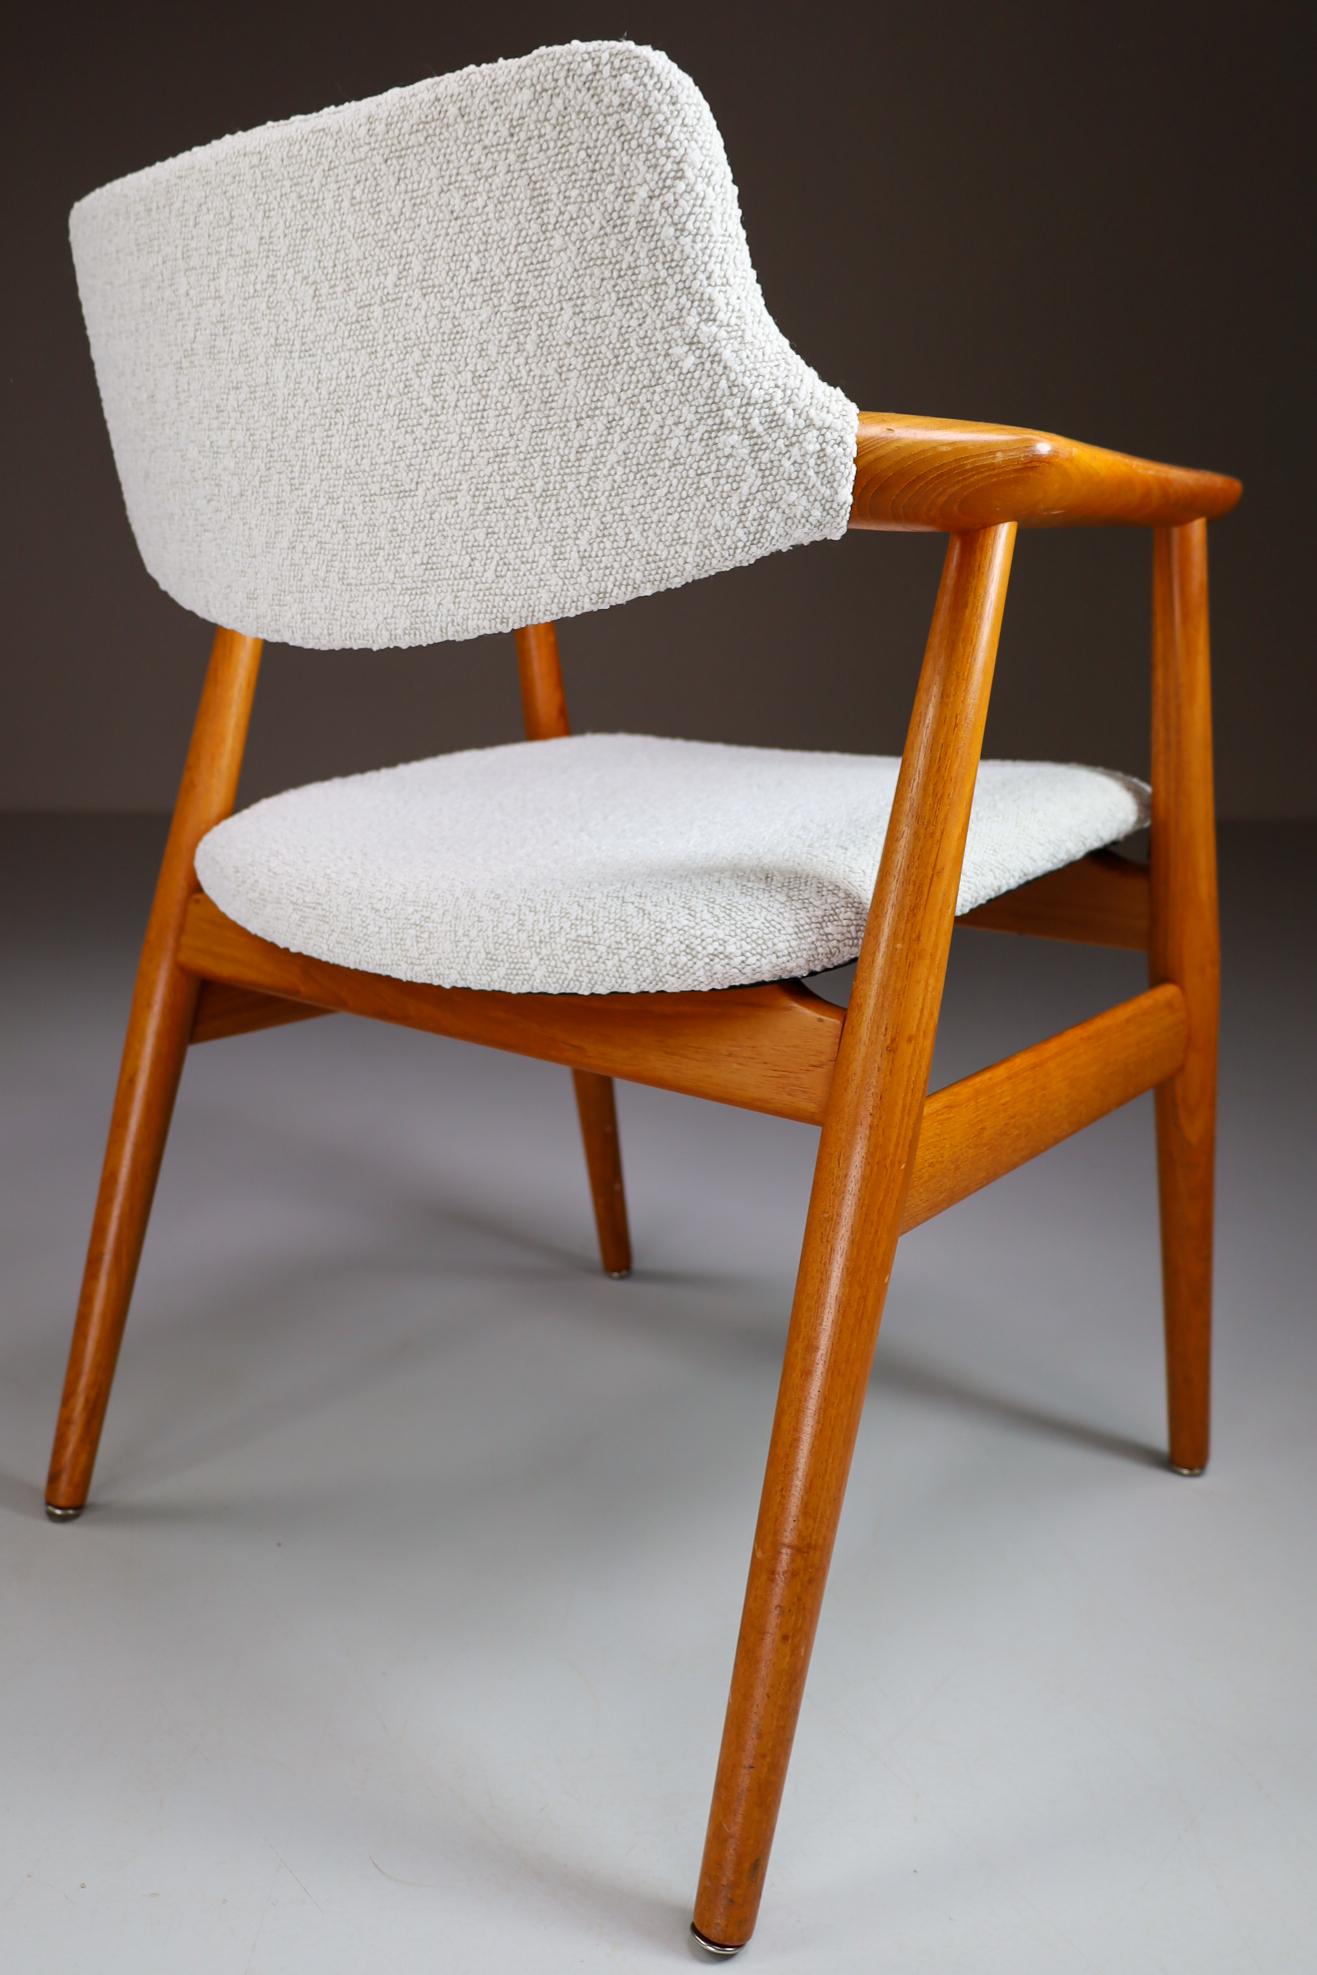 Dänische Sessel aus Teakholz GM11 von Svend Aage Eriksen mit neuem Boucle-Stoff, 1960er Jahre (20. Jahrhundert) im Angebot